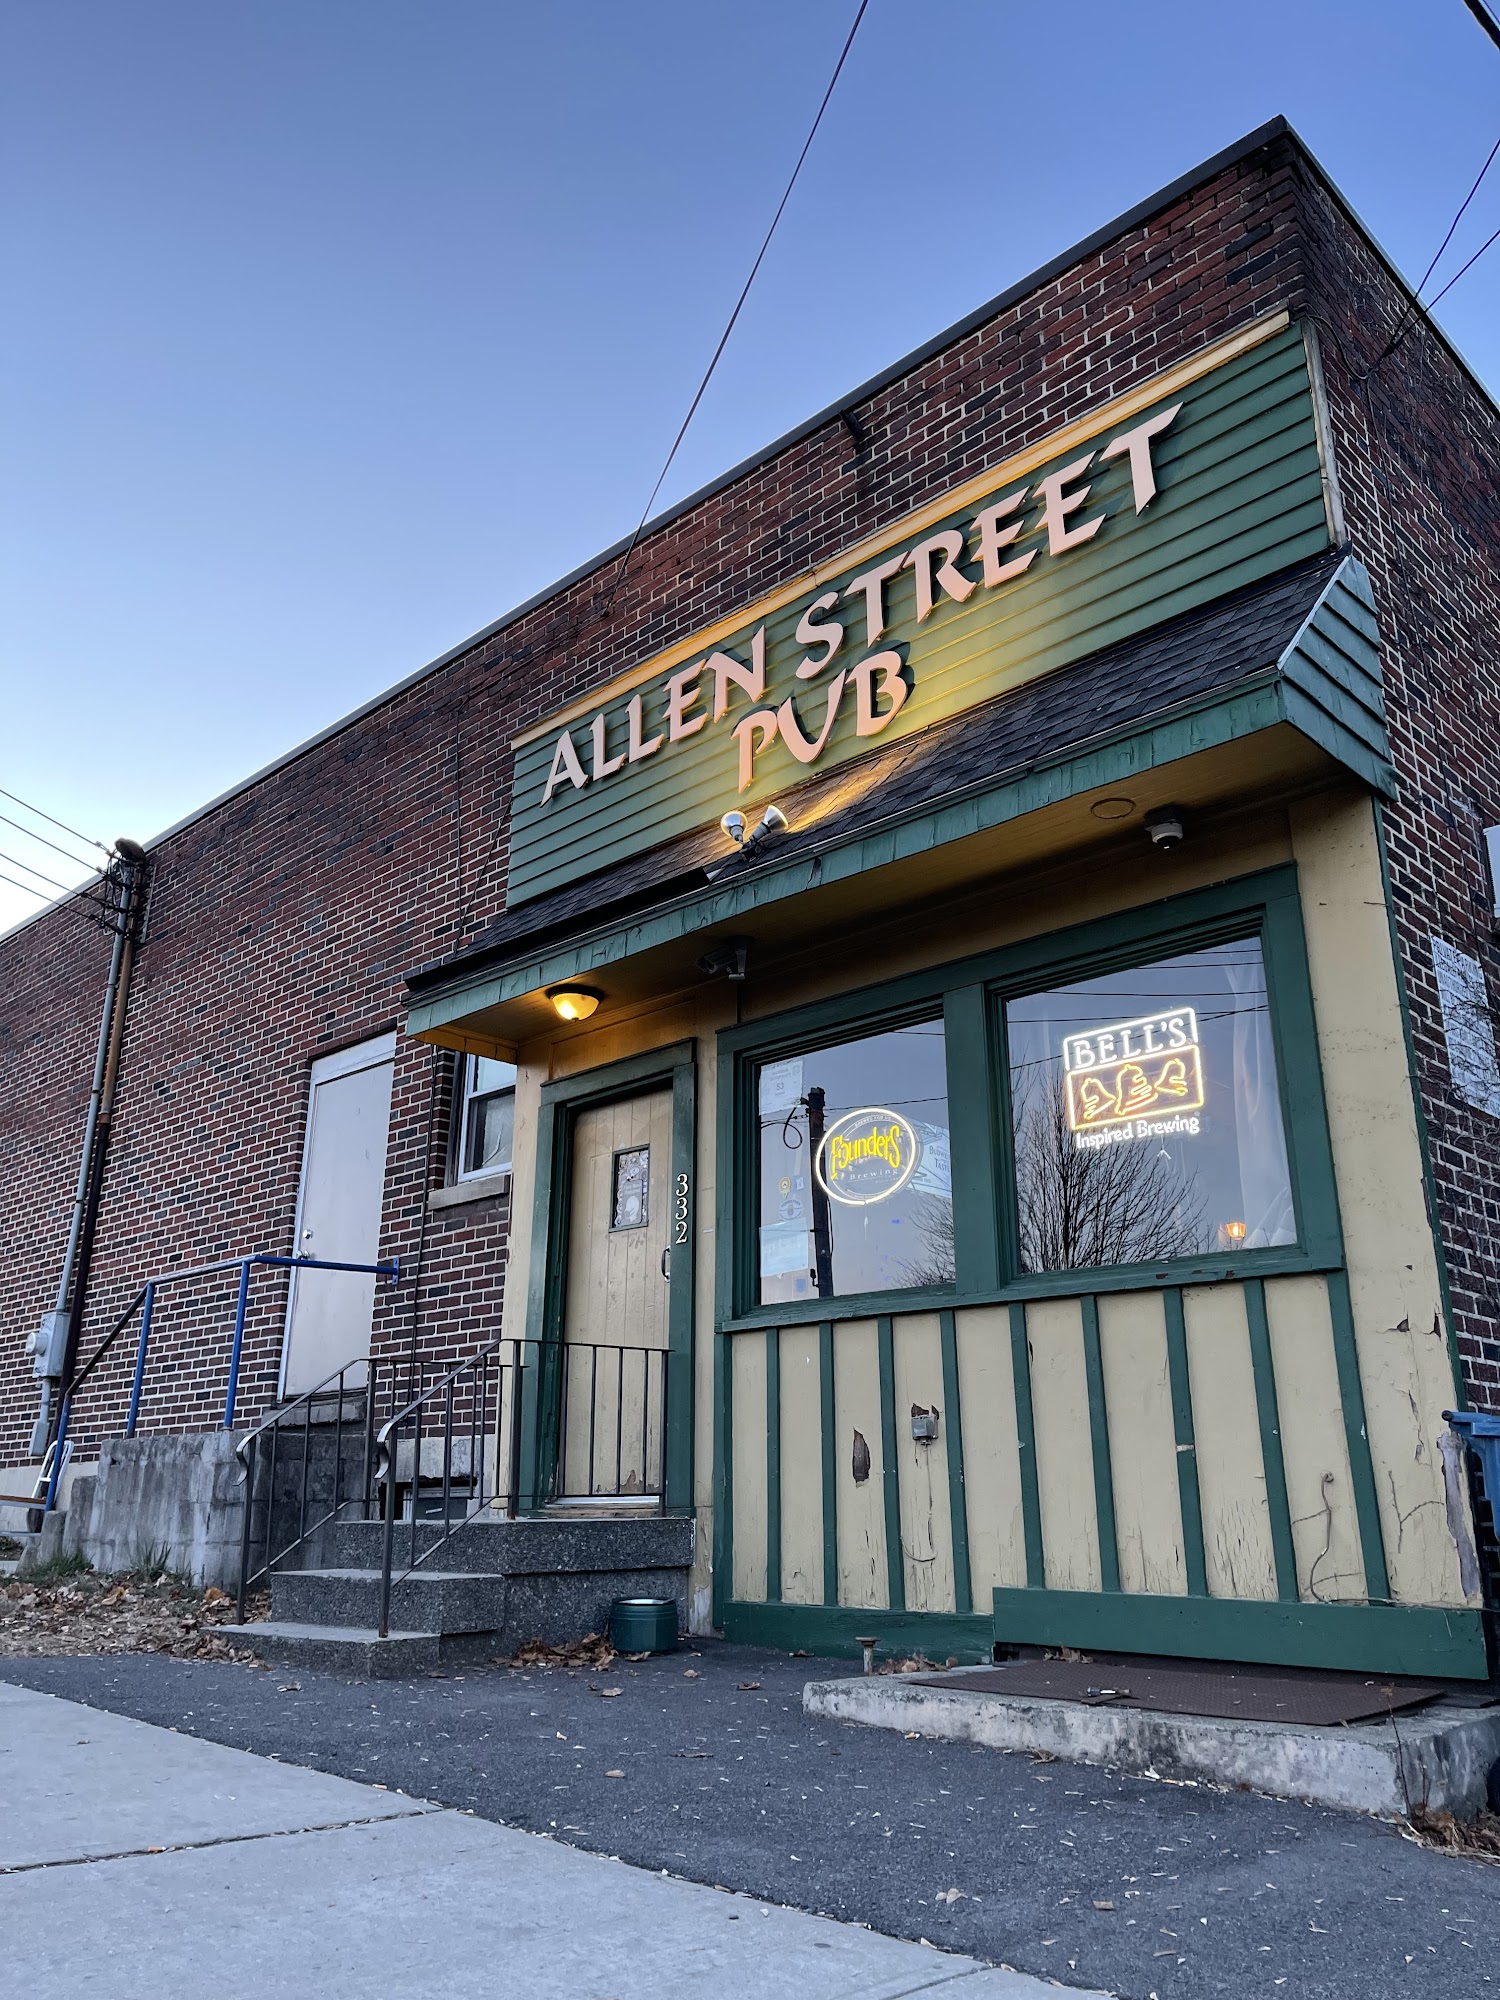 Allen Street Pub